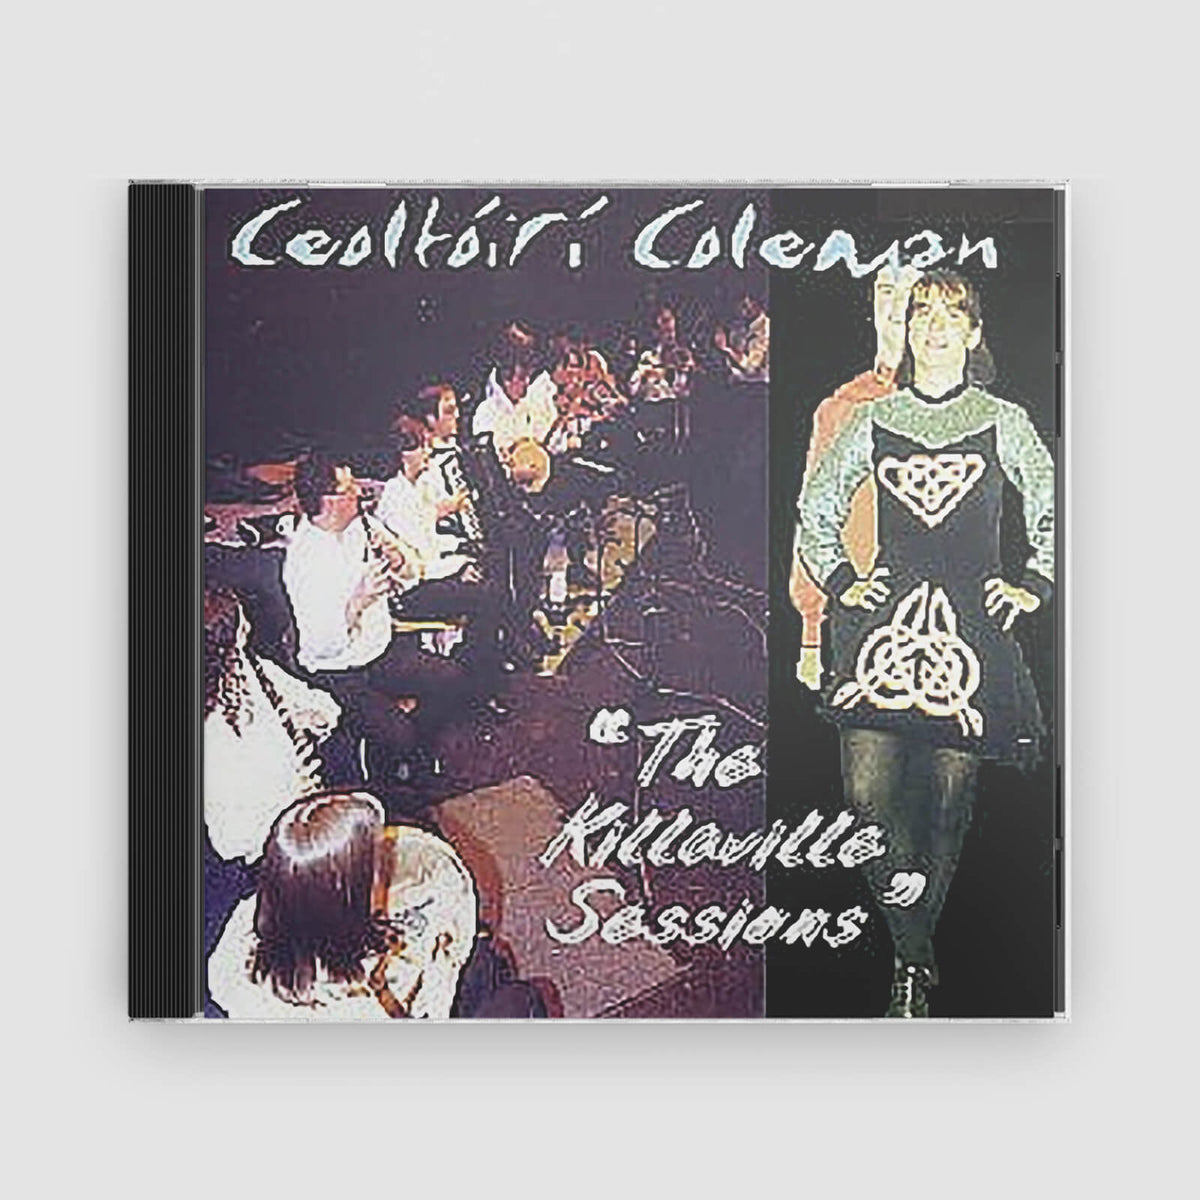 Ceoltoiri Coleman : The Killaville Sessions